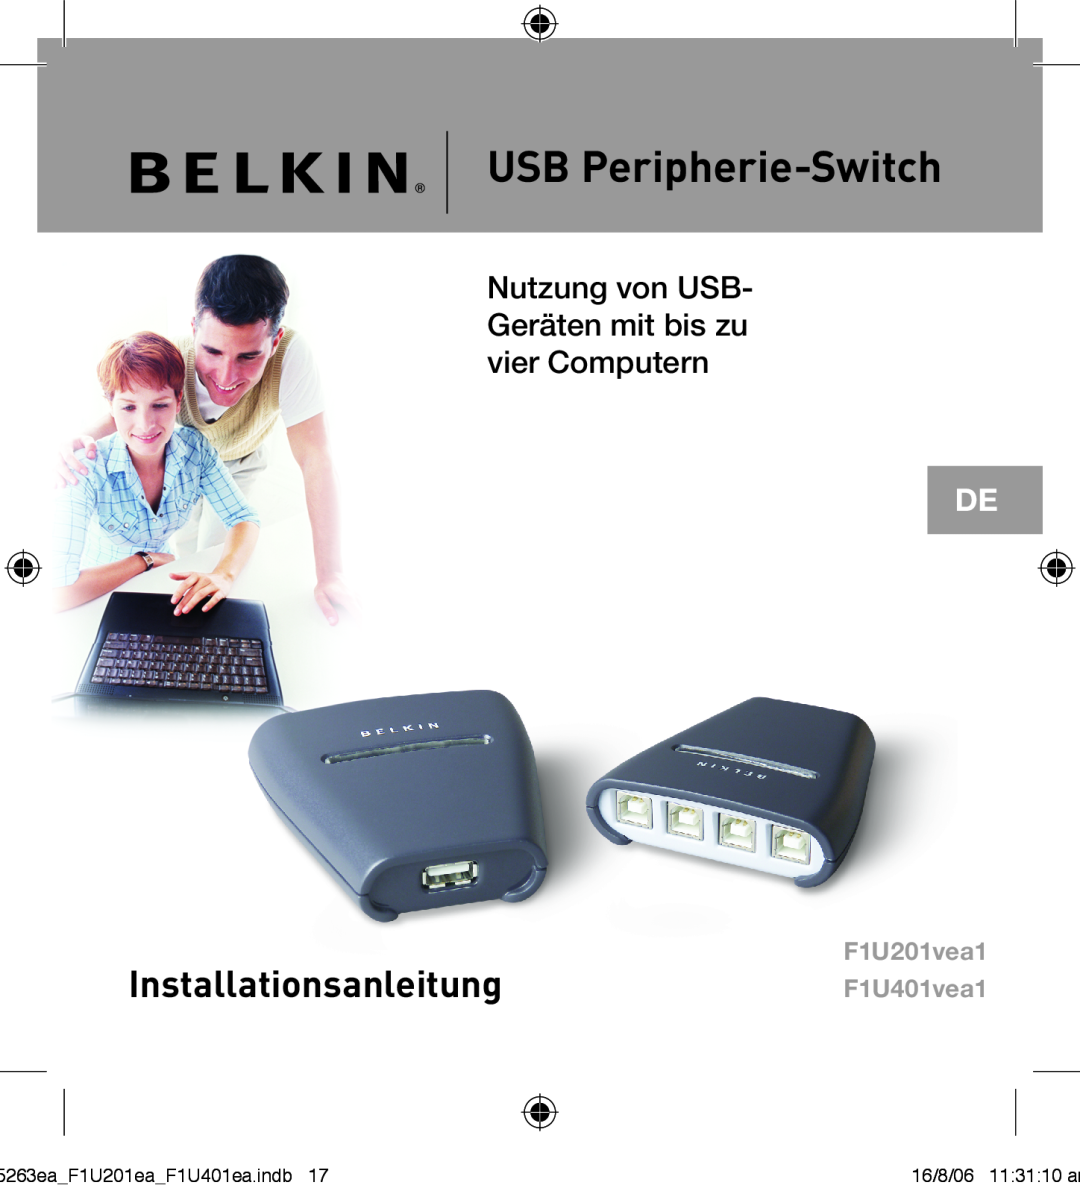 Belkin F1U201VEA1 manual USB Peripherie-Switch, Installationsanleitung, Nutzung von USB- Geräten mit bis zu vier Computern 